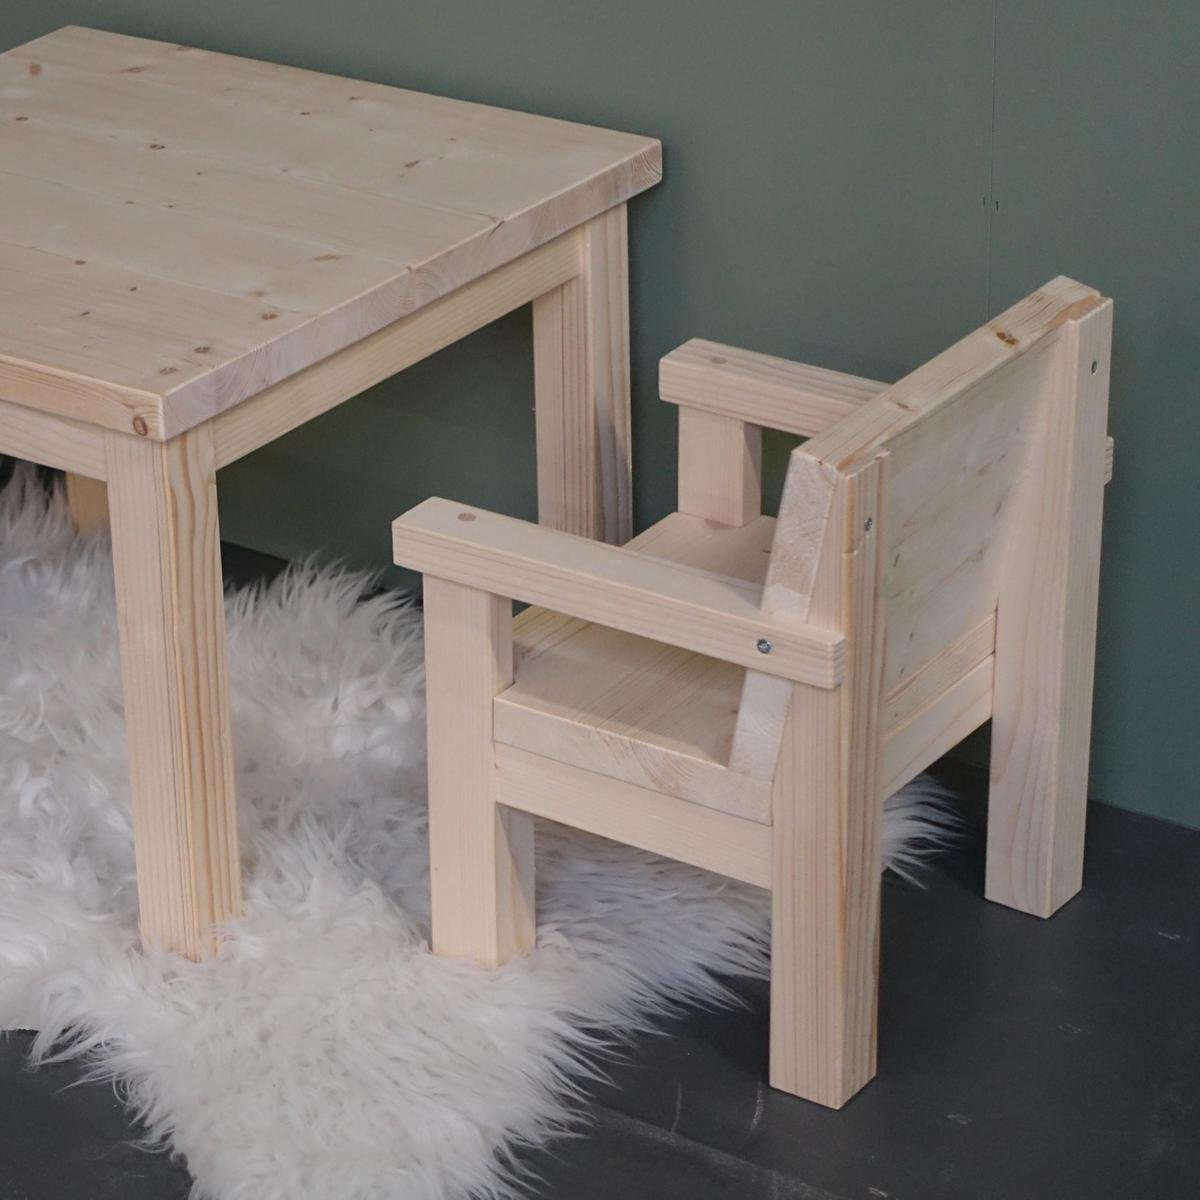 Klein houten kinderstoeltjes 1-3 jaar | stoeltje peuter van massief hout |  bol.com